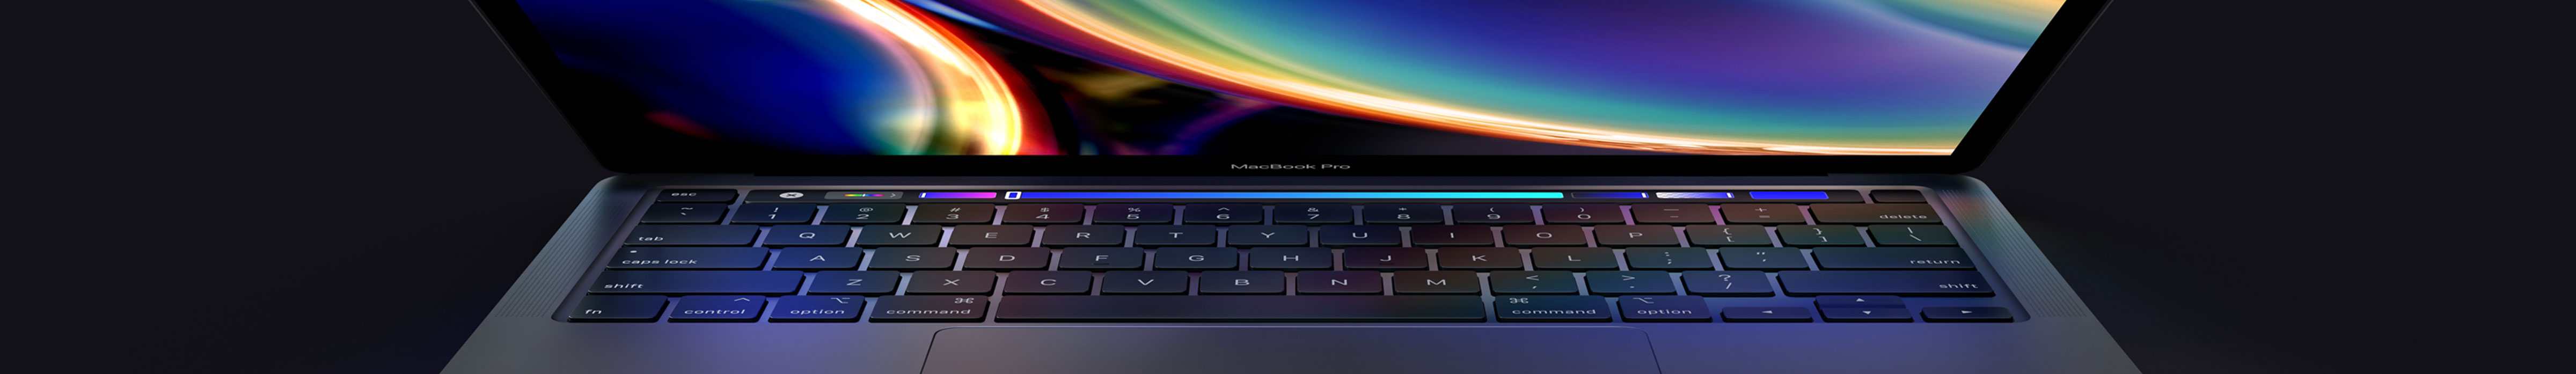 MacBook Pro 13-inch - inruilen